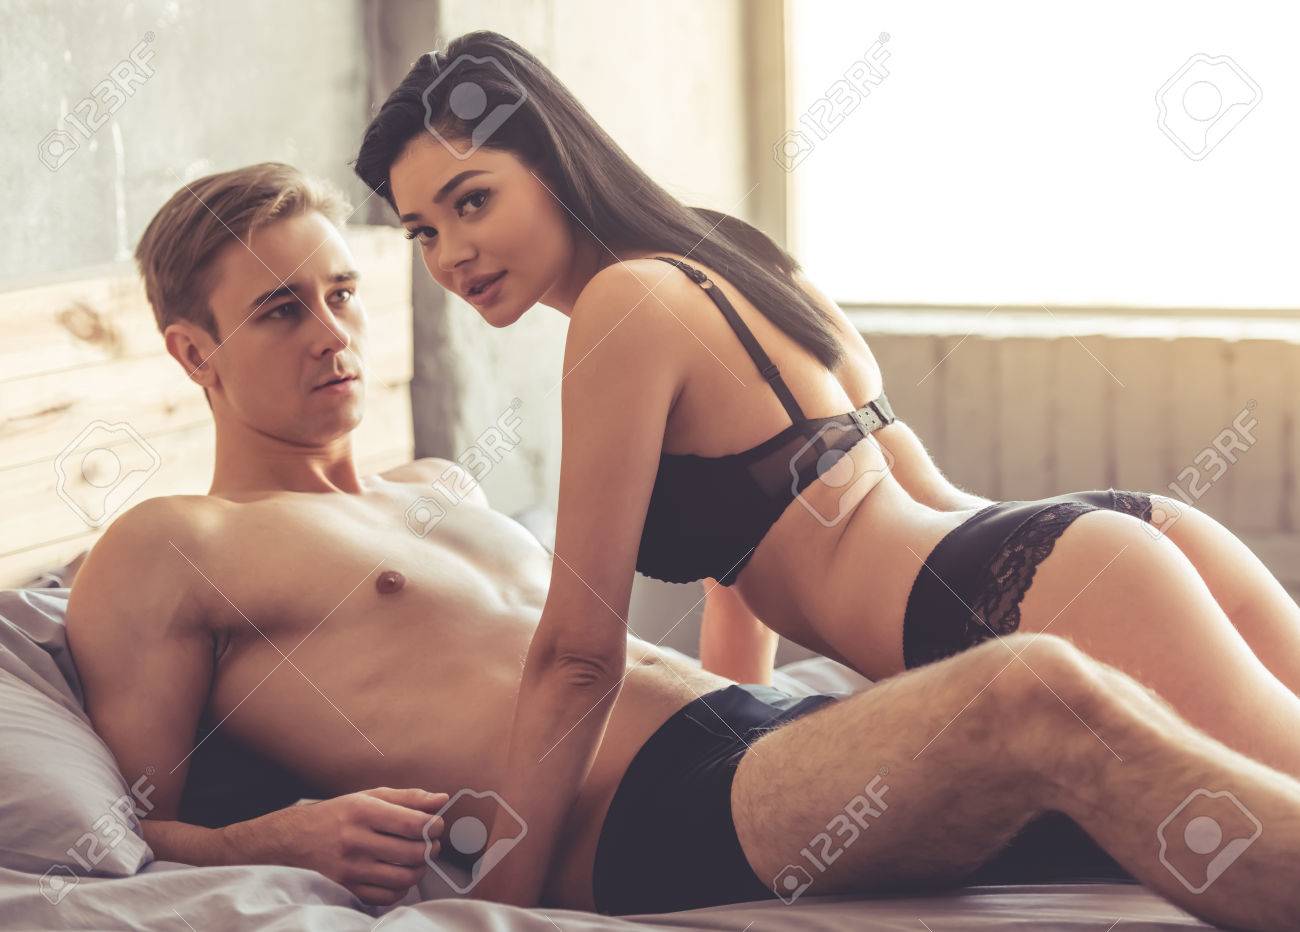 brandi girardot recommends Beautiful Young Couple Sex